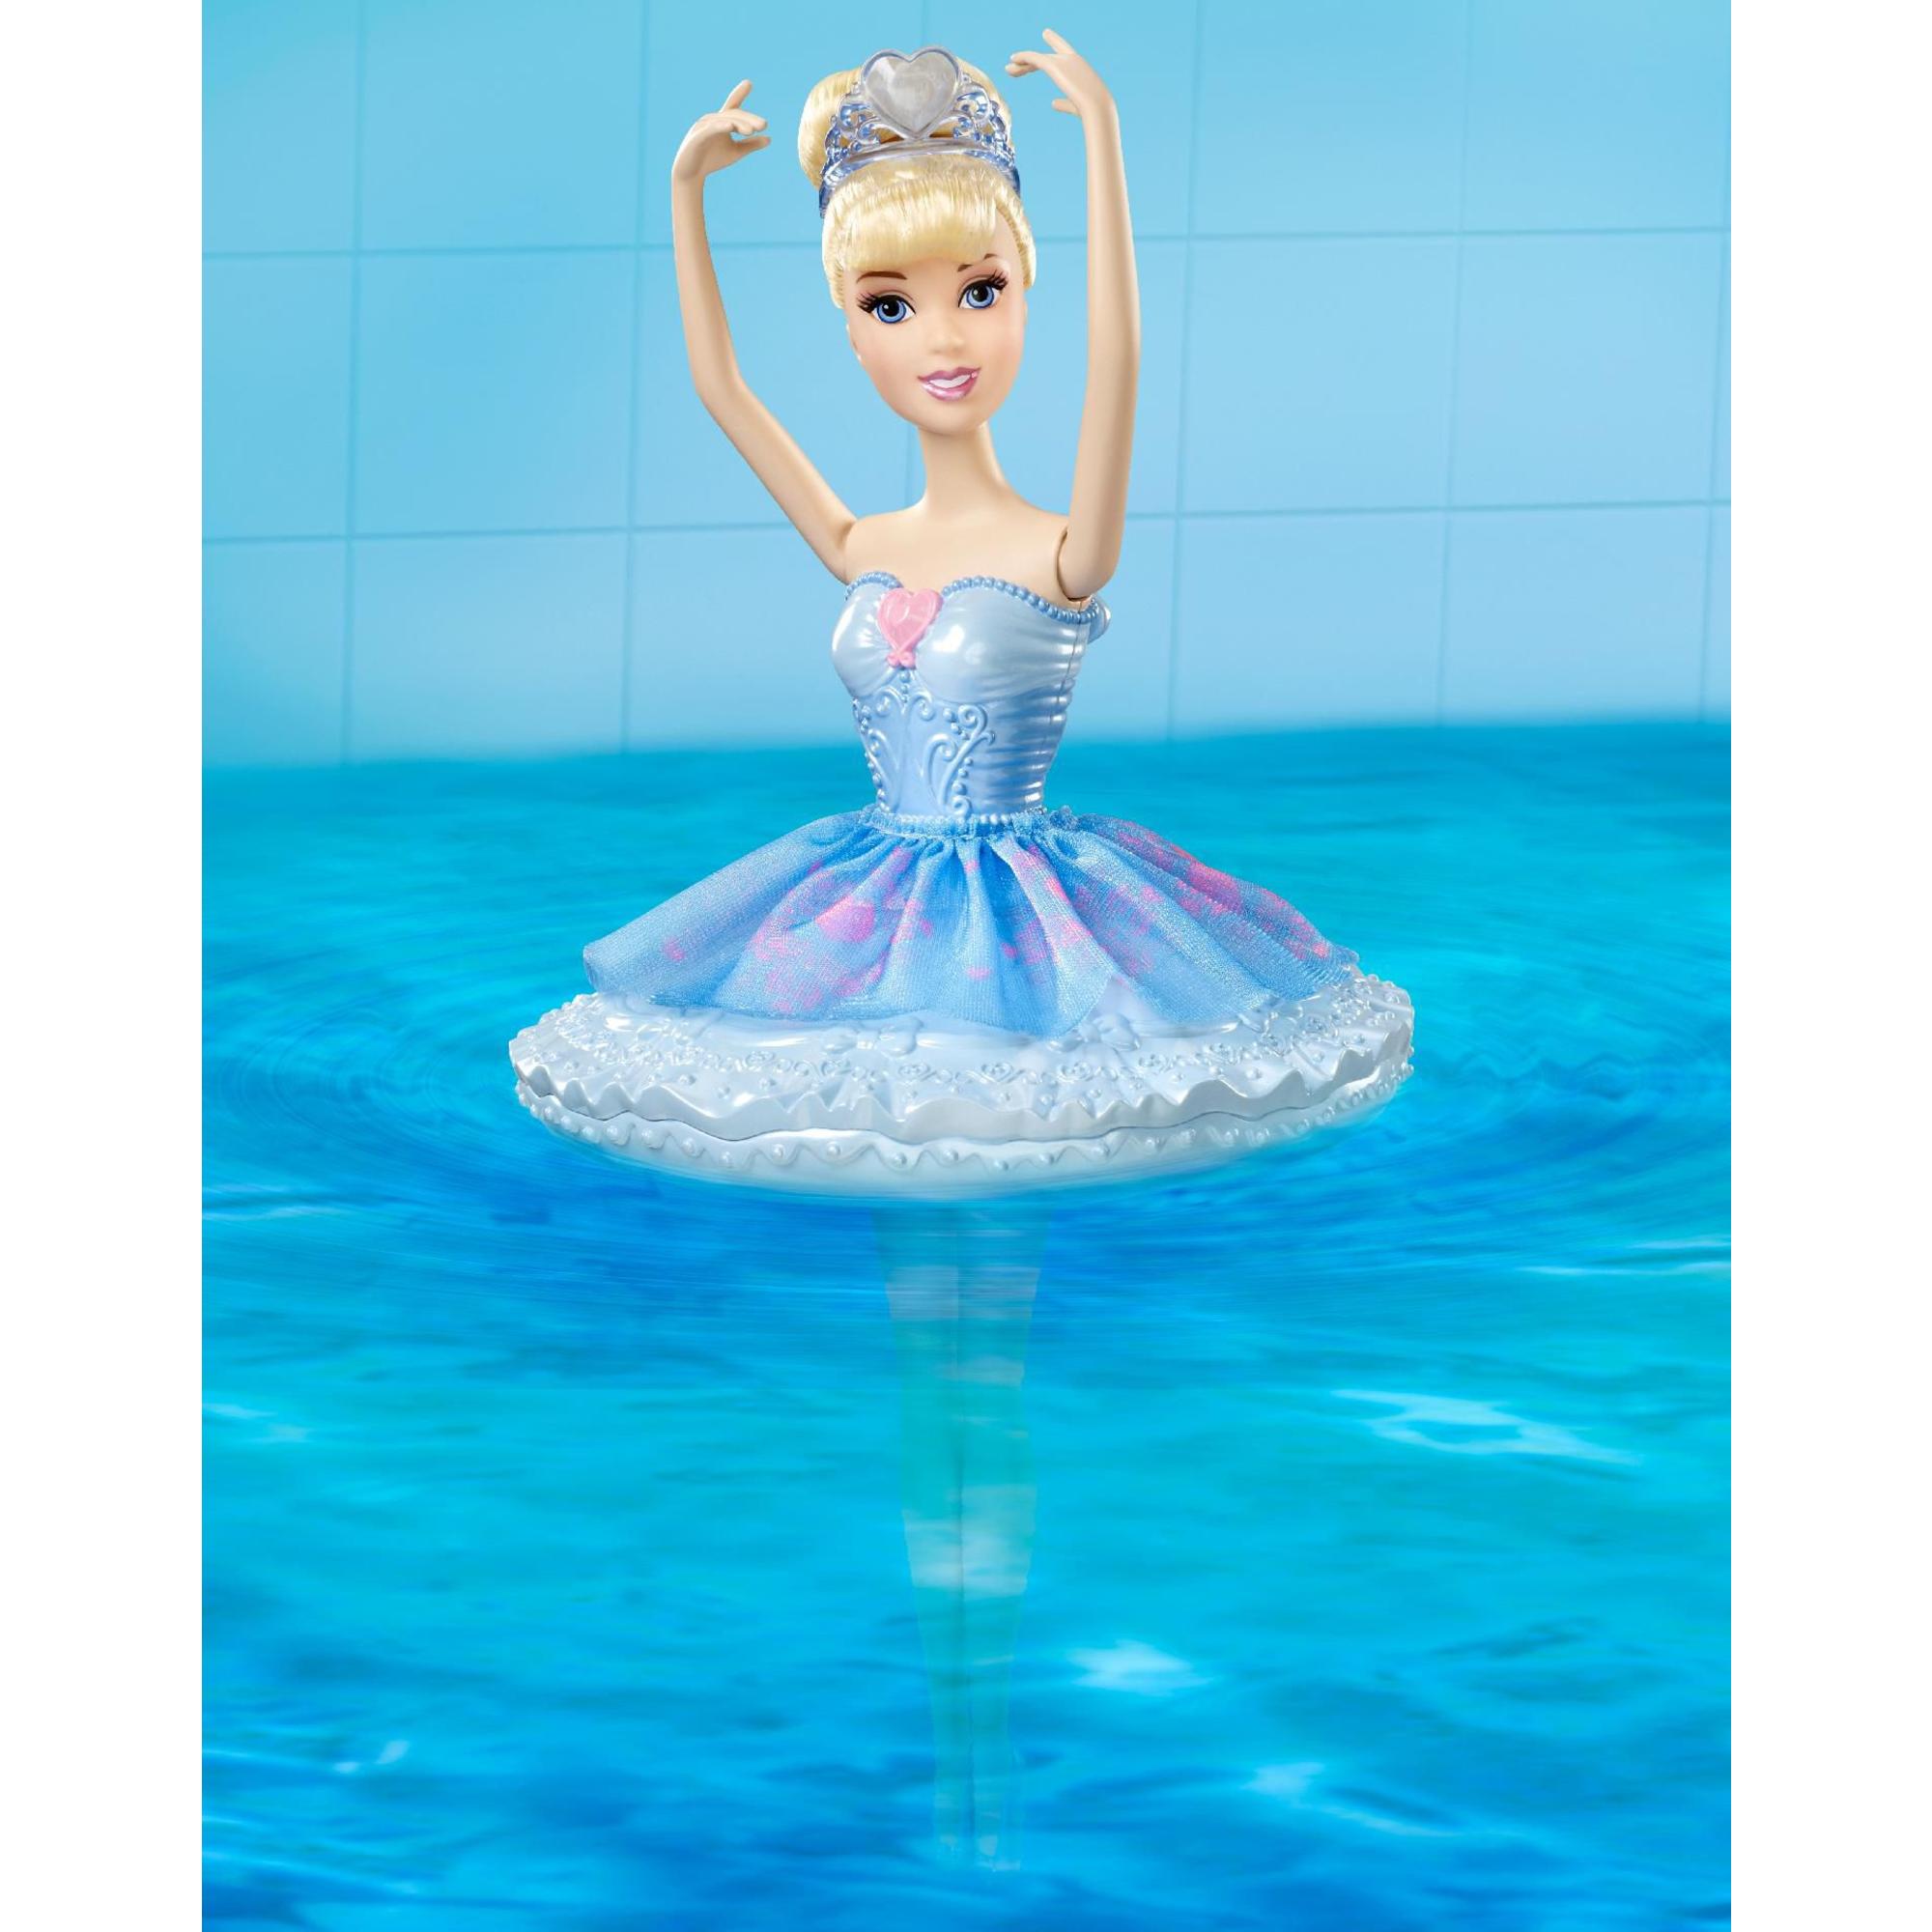 NEW: Découvrez un 1er aperçu des poupées Princesses Water Ballet!